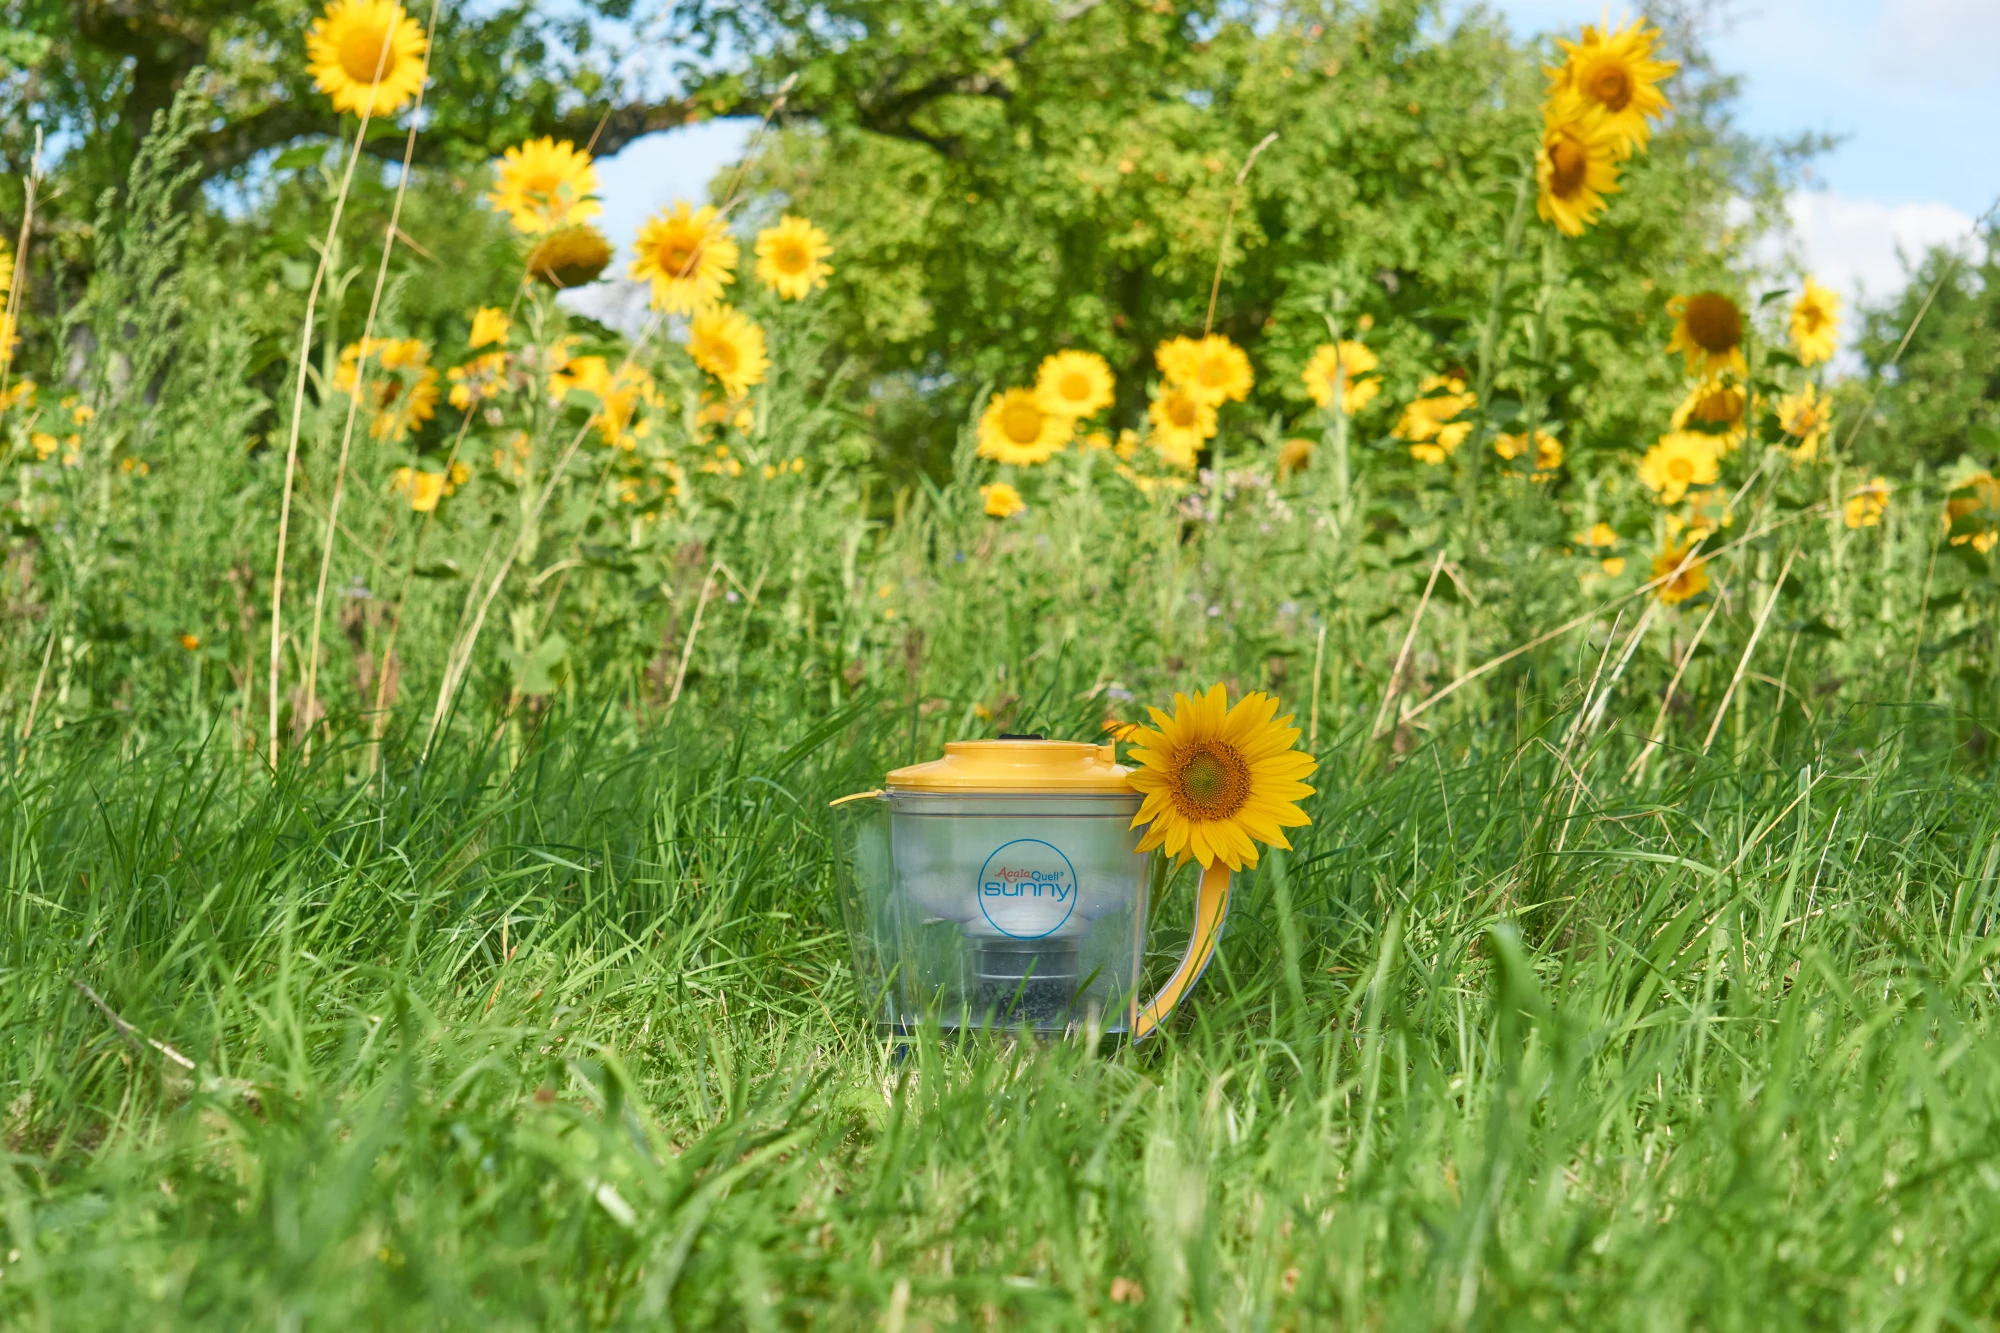 Kannenwasserfilter Sunny mit gelbem Deckel vor einem Feld mit Sonnenblumen